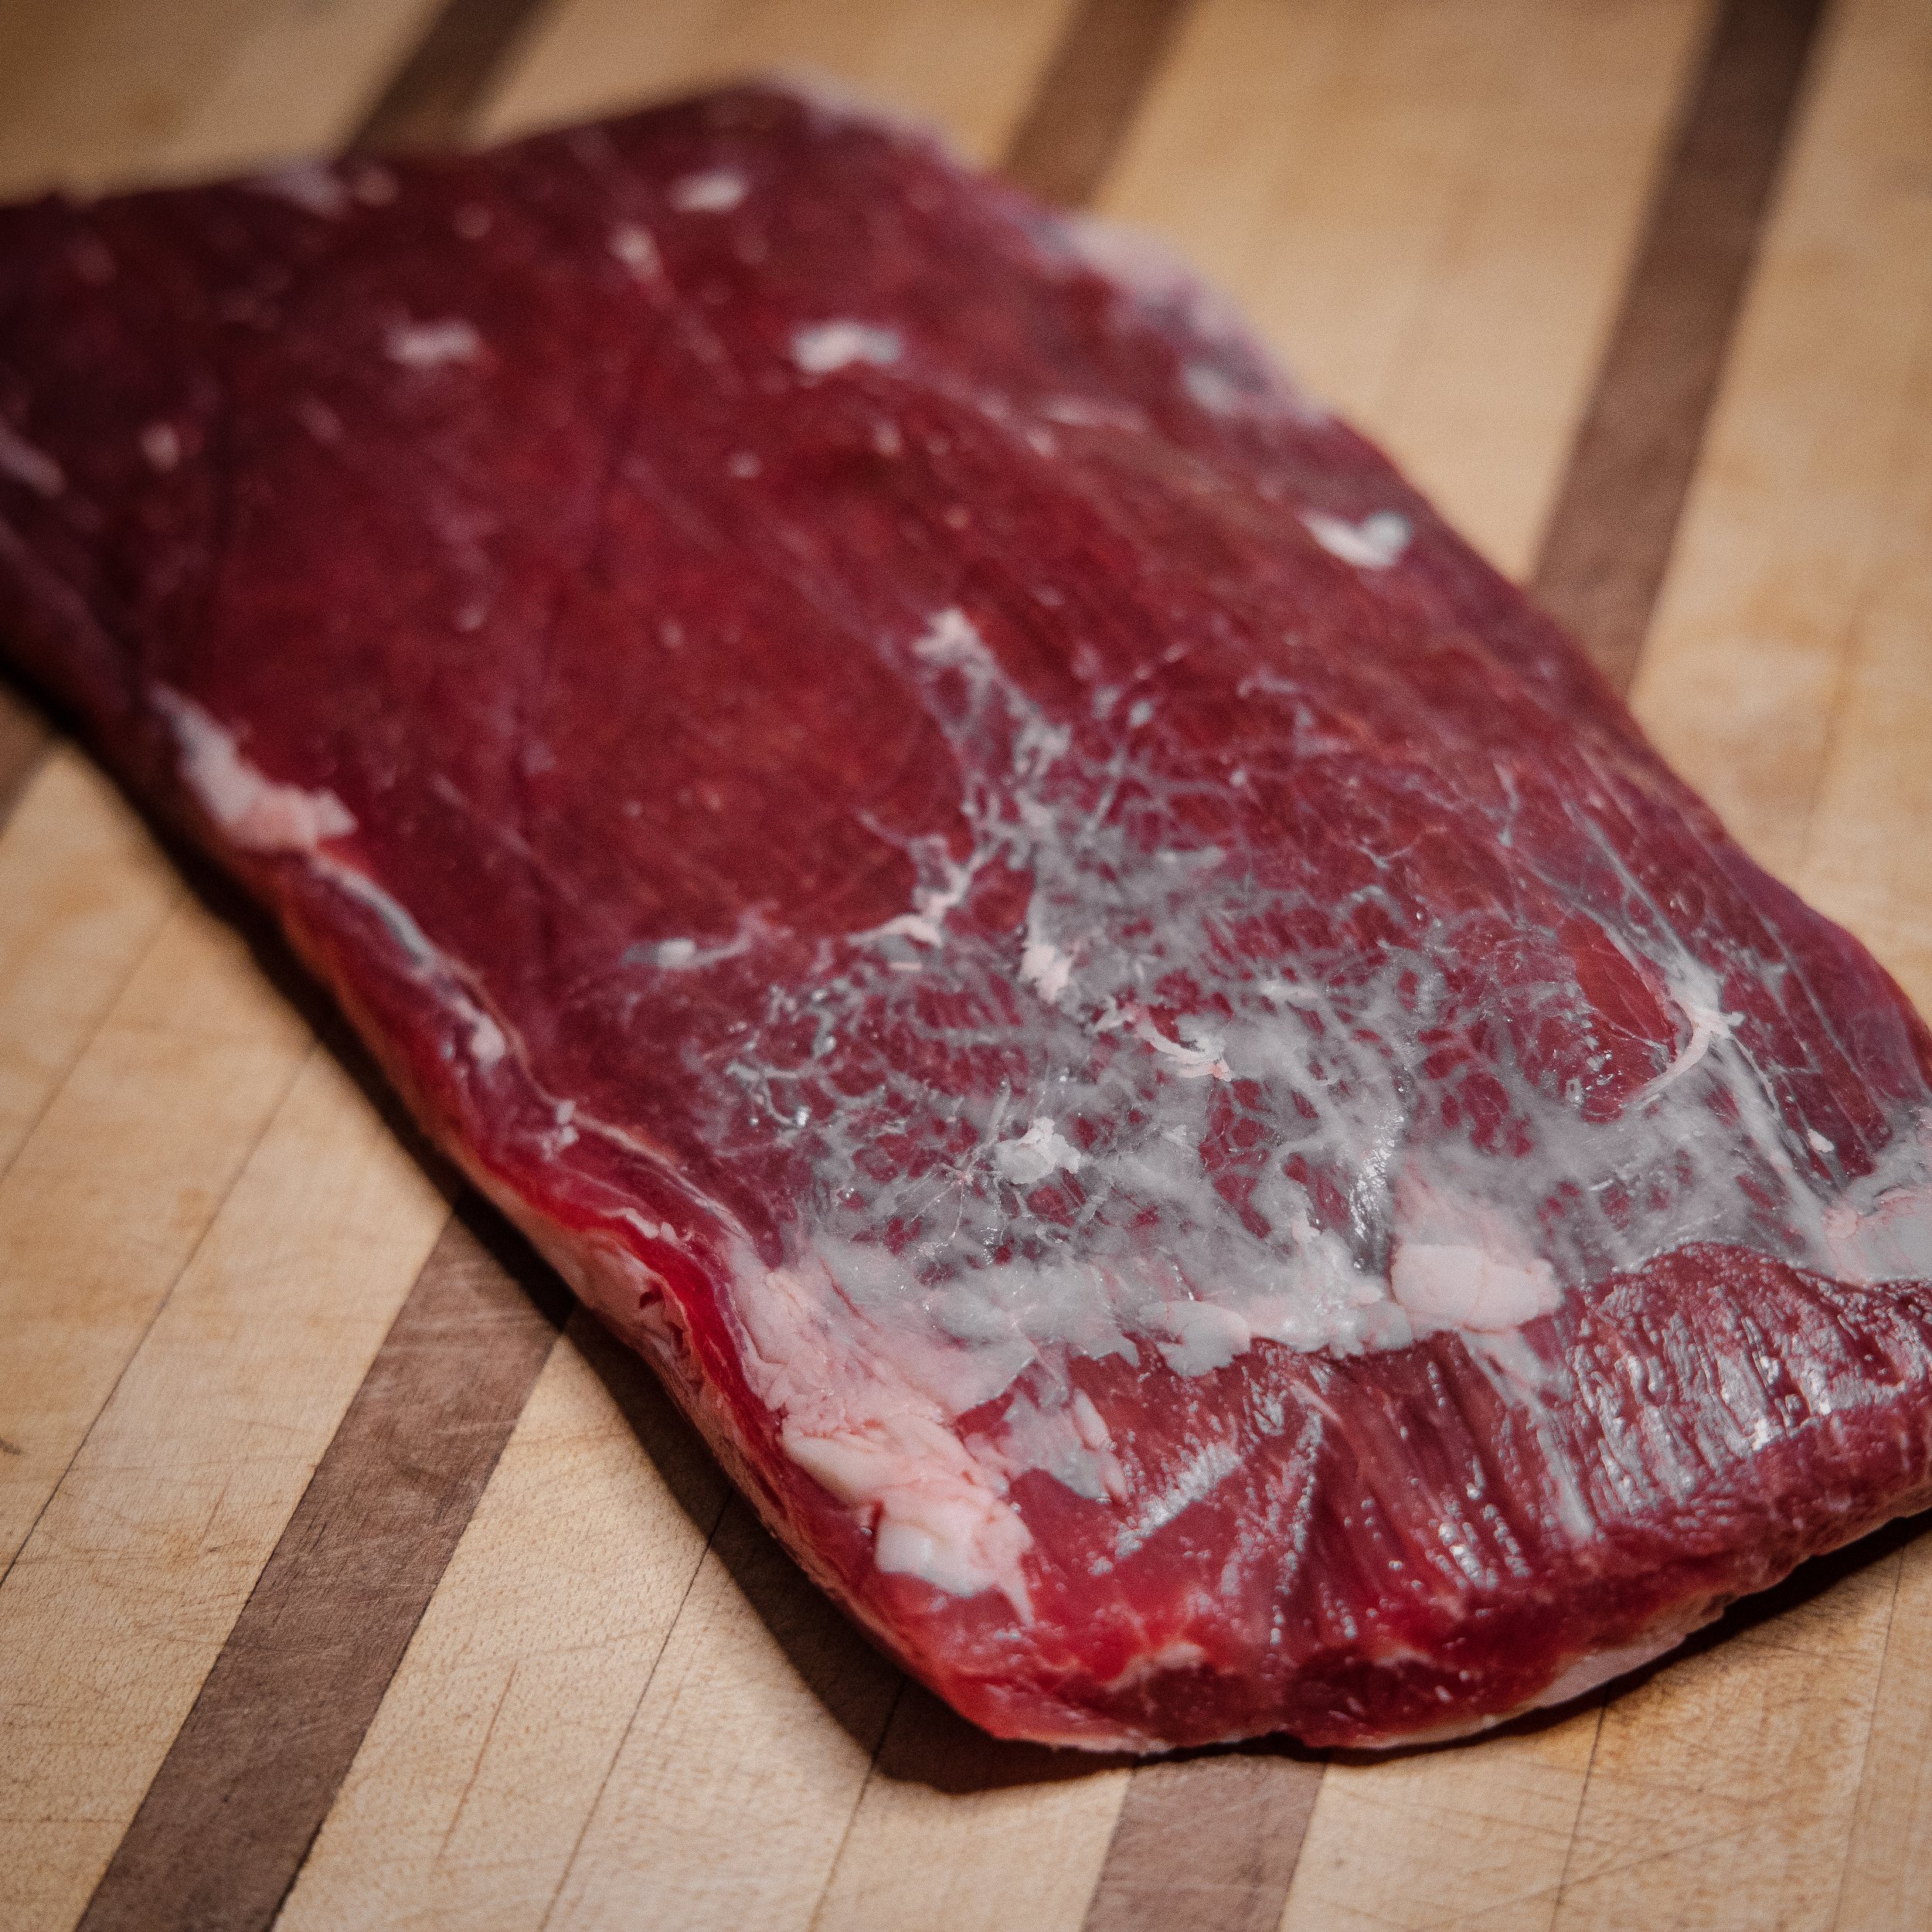 Grass-Fed Beef Flank Steak